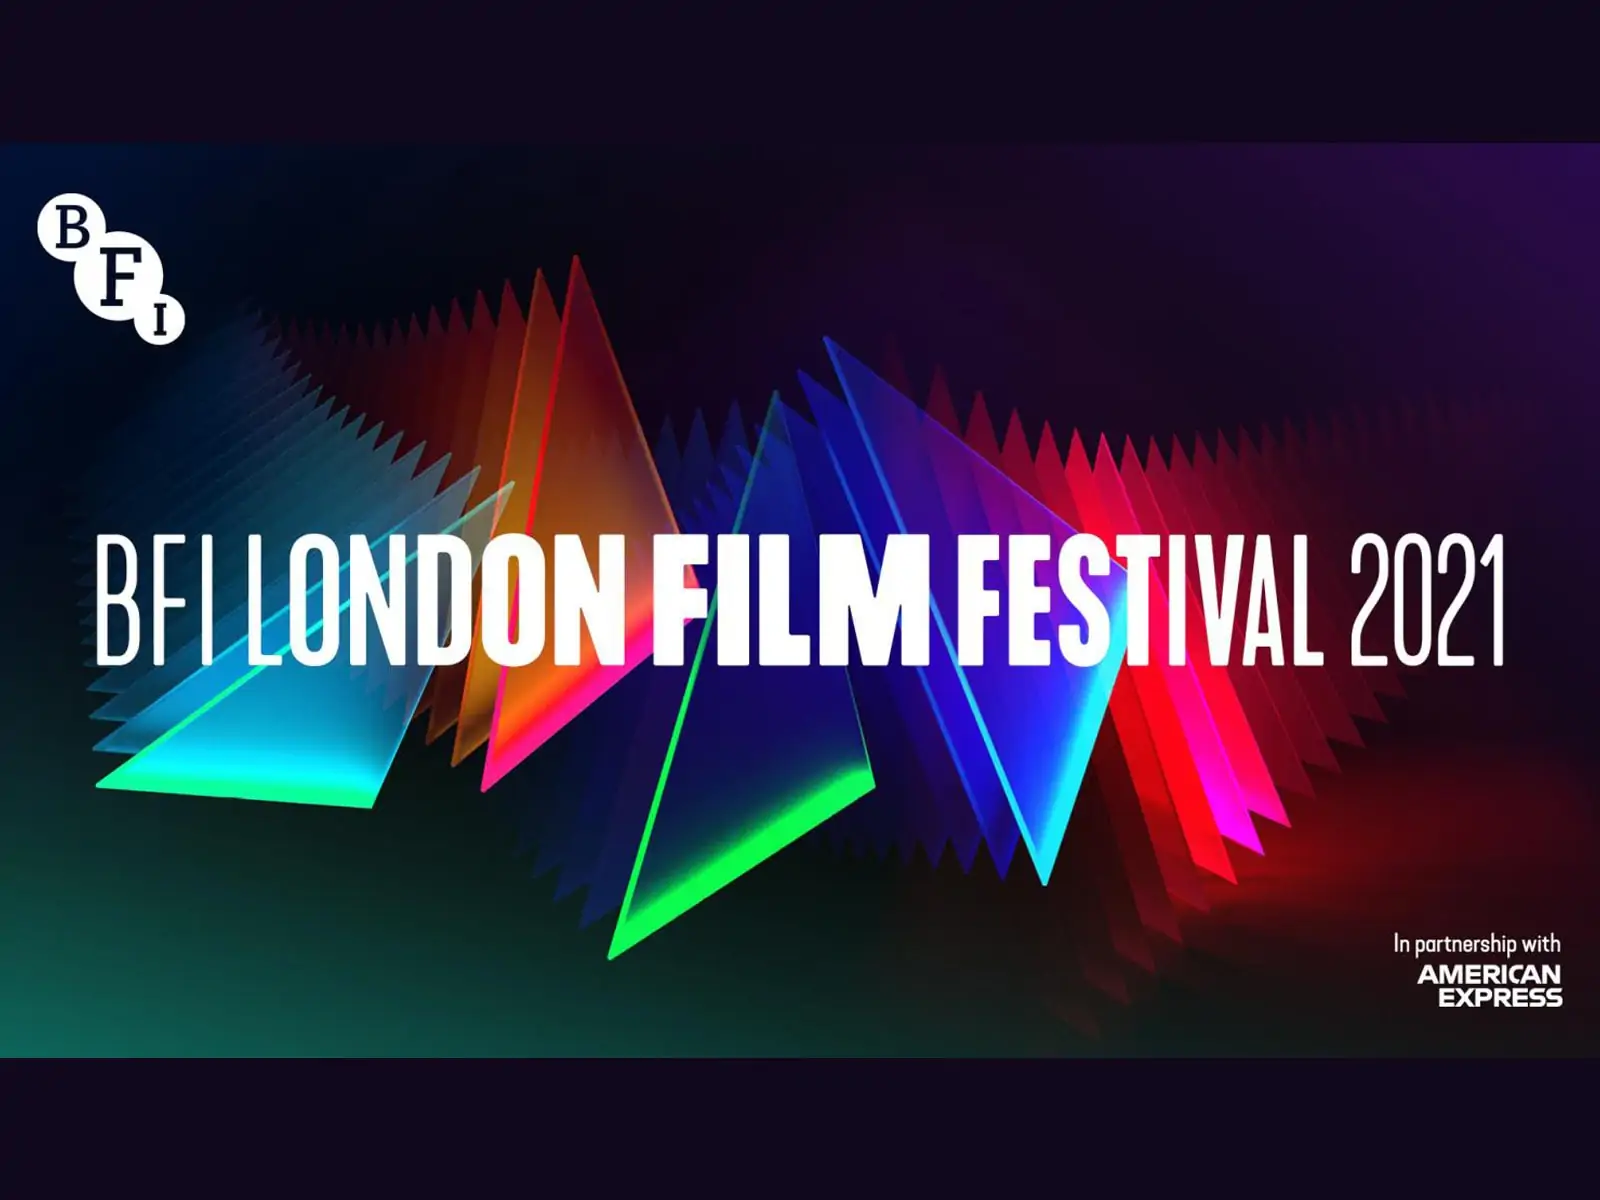 BFI London Film Festival unveils 2021 programme